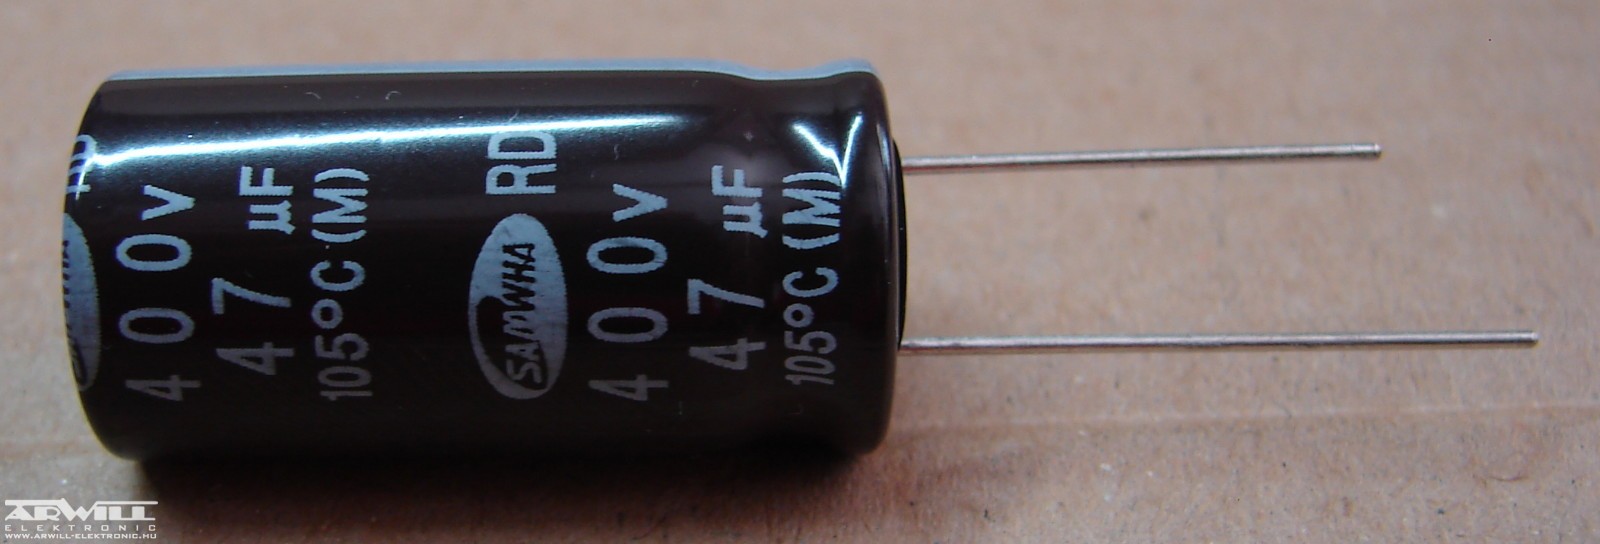 47uf-400v-elektrolit-kondenzator-529219-7764.jpg